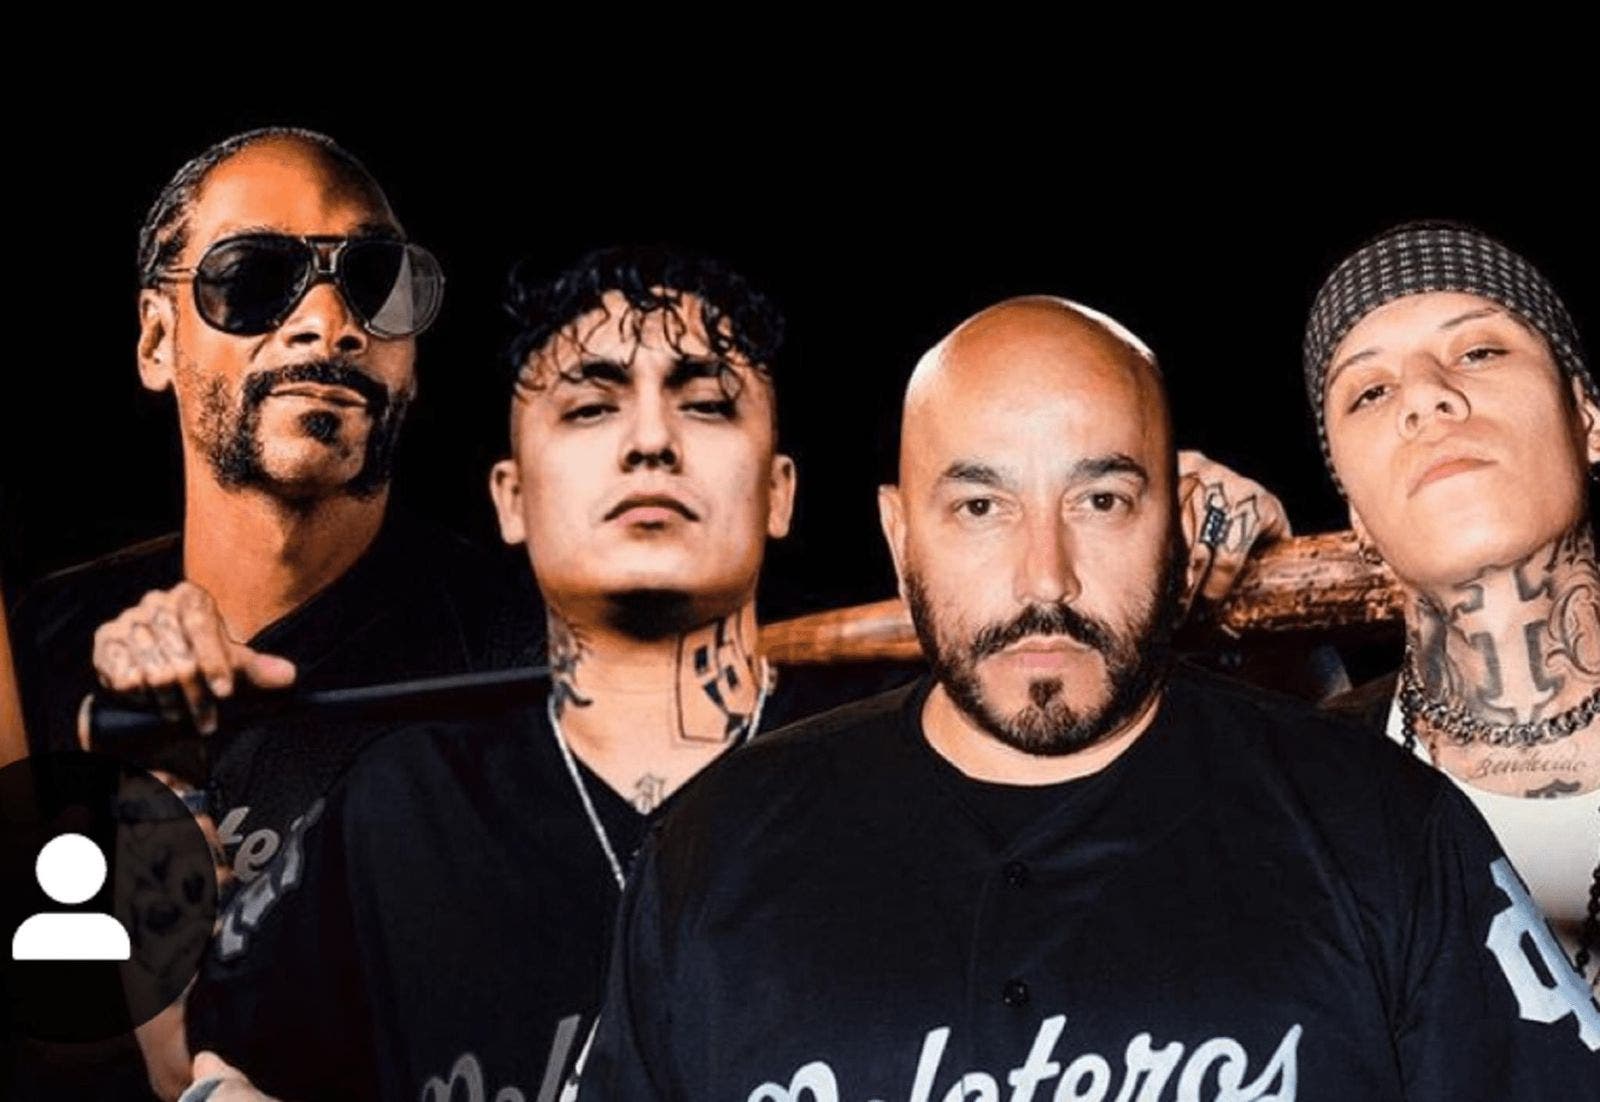 Entérate: Snoop Dogg y Lupillo Rivera sorprenden al lanzar su colaboración musical “Grandes ligas” 